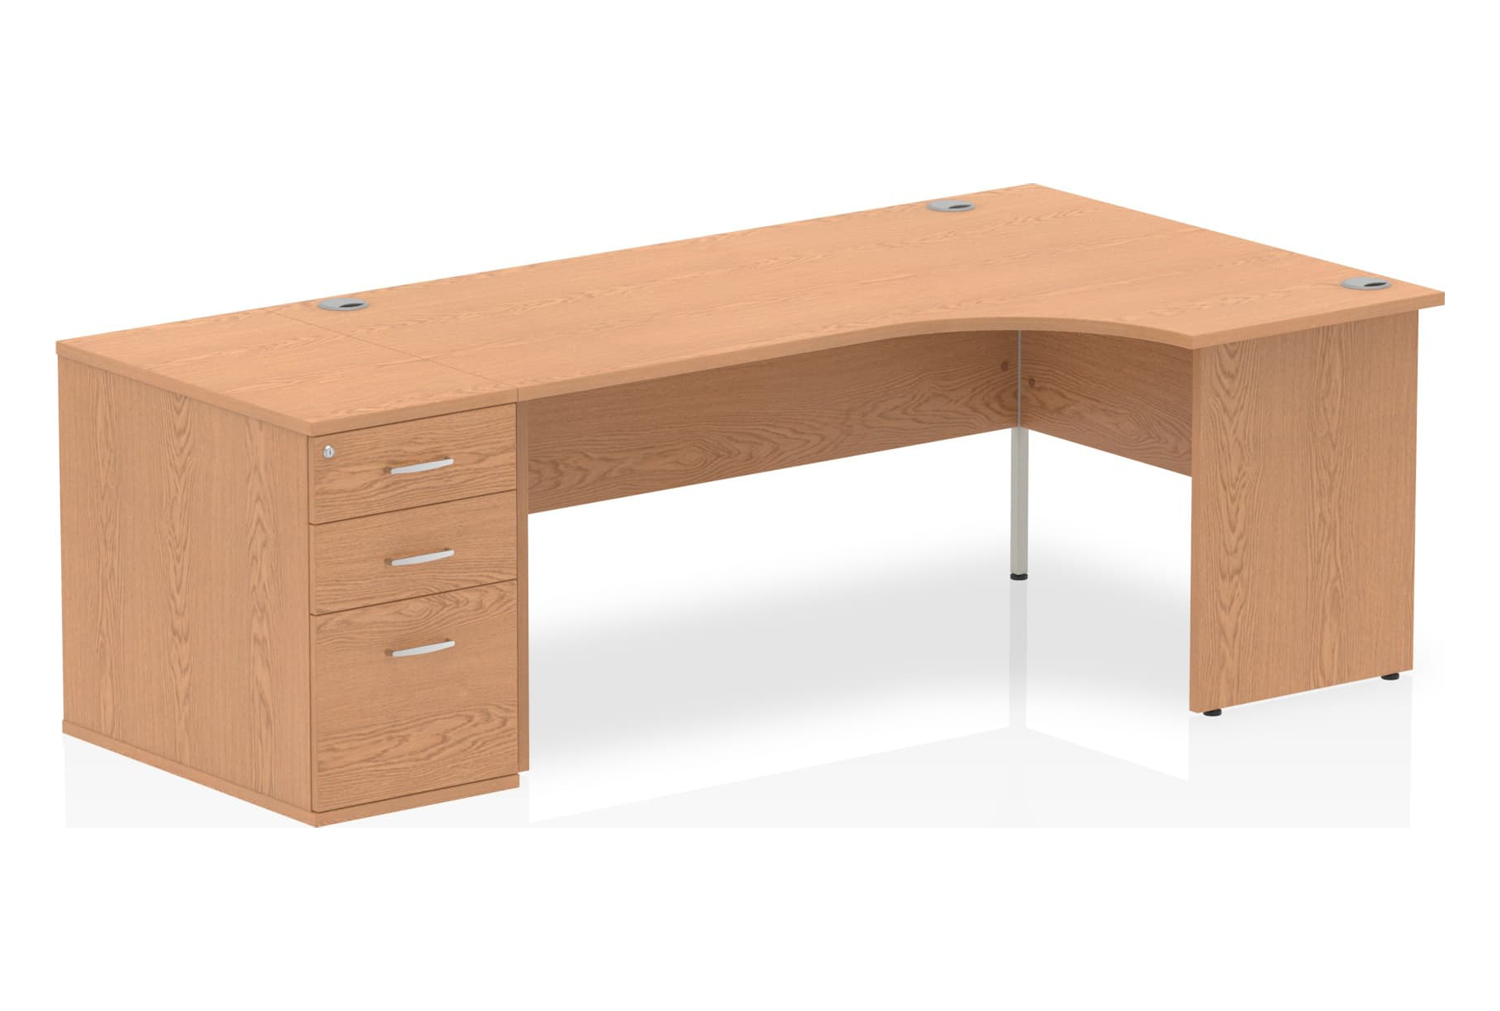 Vitali Panel End Office Desk Bundle Deal 6, 180wx120/80dx73h (cm), Oak, Fully Installed